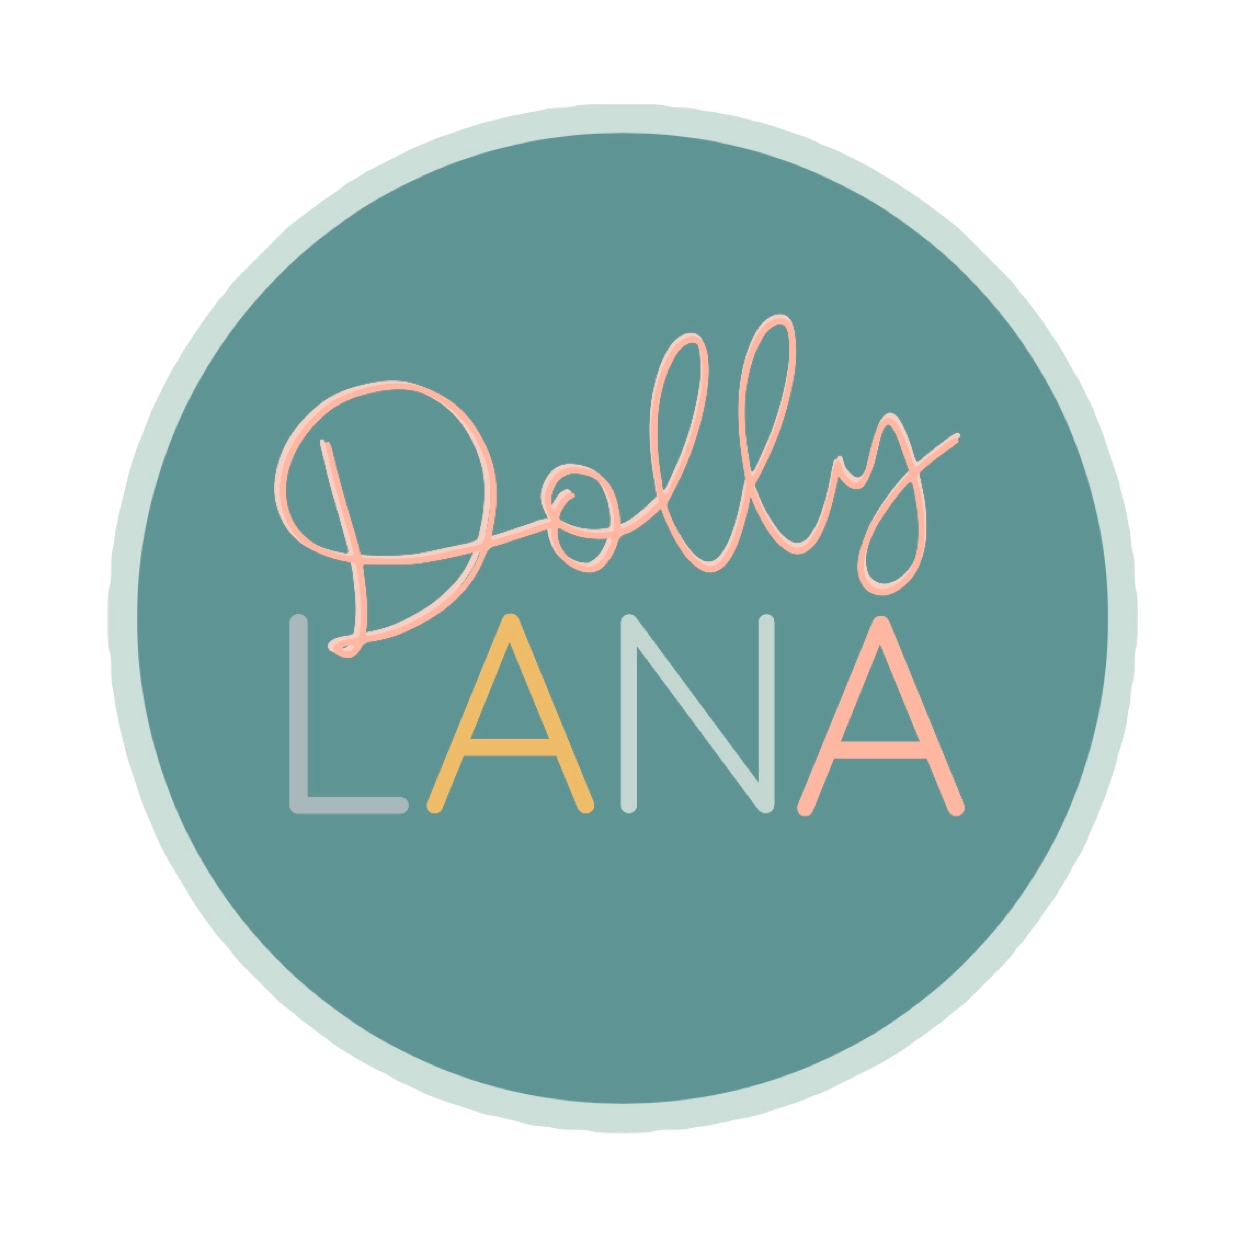 Dolly Lana 